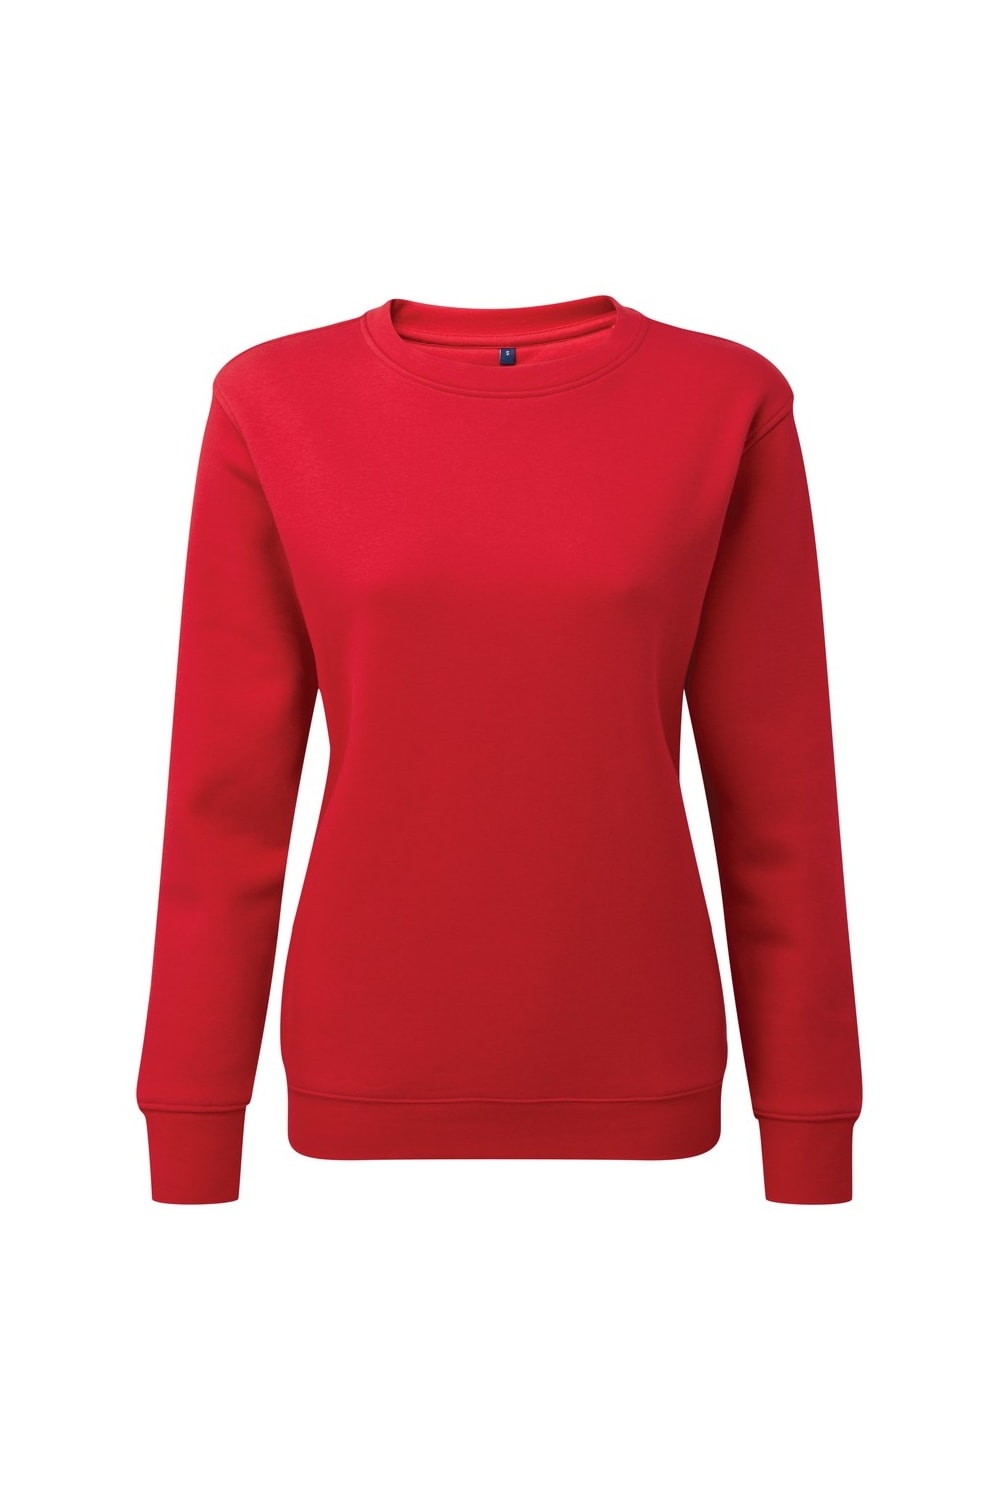 Asquith & Fox Womens/Ladies Organic Crew Neck Sweatshirt (Cherry Red)